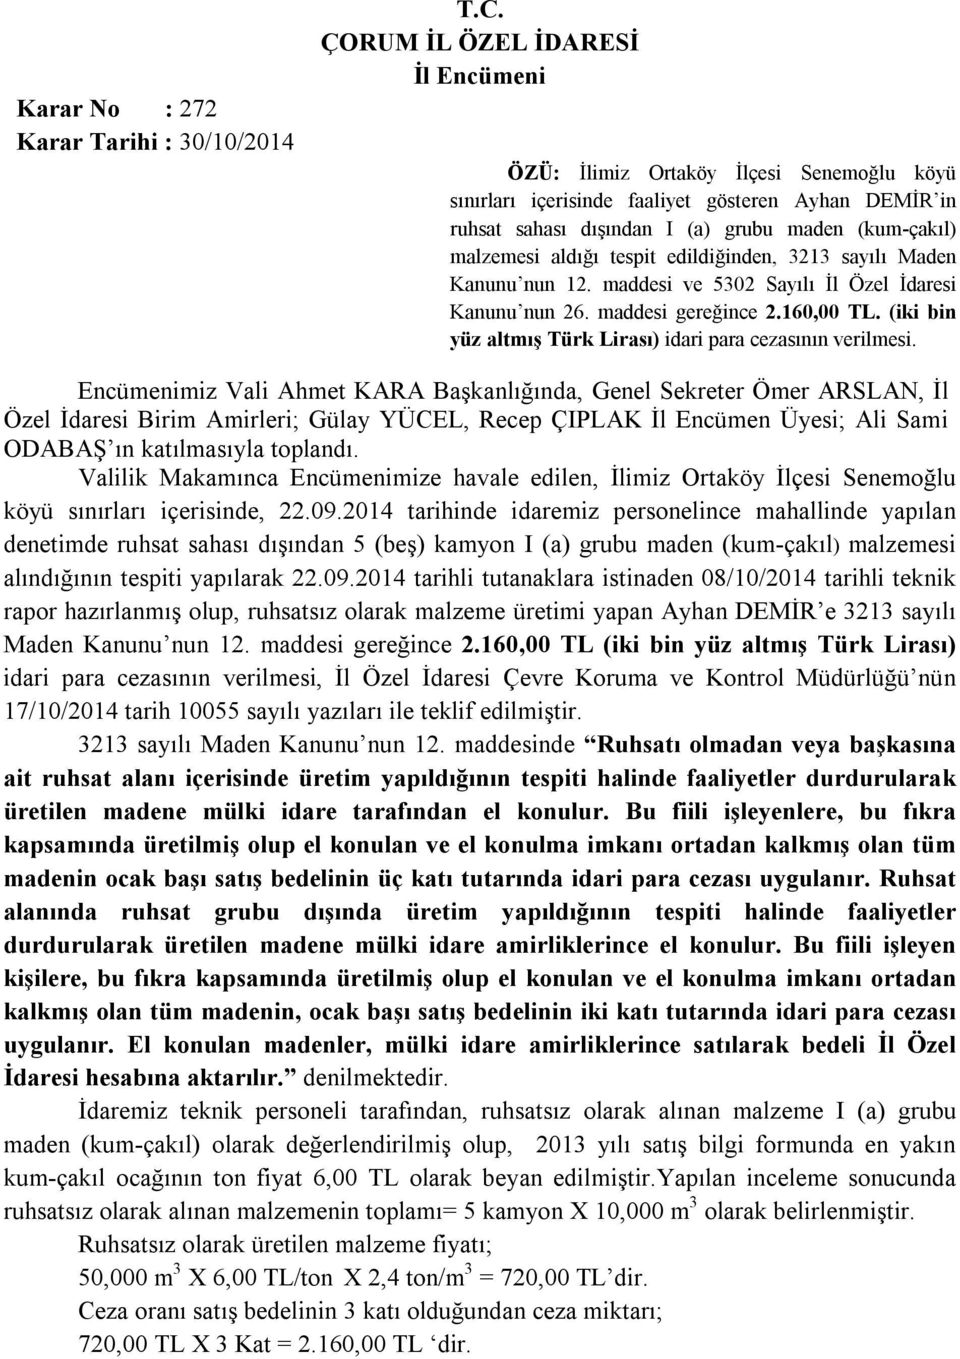 Maden Kanunu nun 12. maddesi ve 5302 Sayılı İl Özel İdaresi Kanunu nun 26. maddesi gereğince 2.160,00 TL. (iki bin yüz altmış Türk Lirası) idari para cezasının verilmesi.